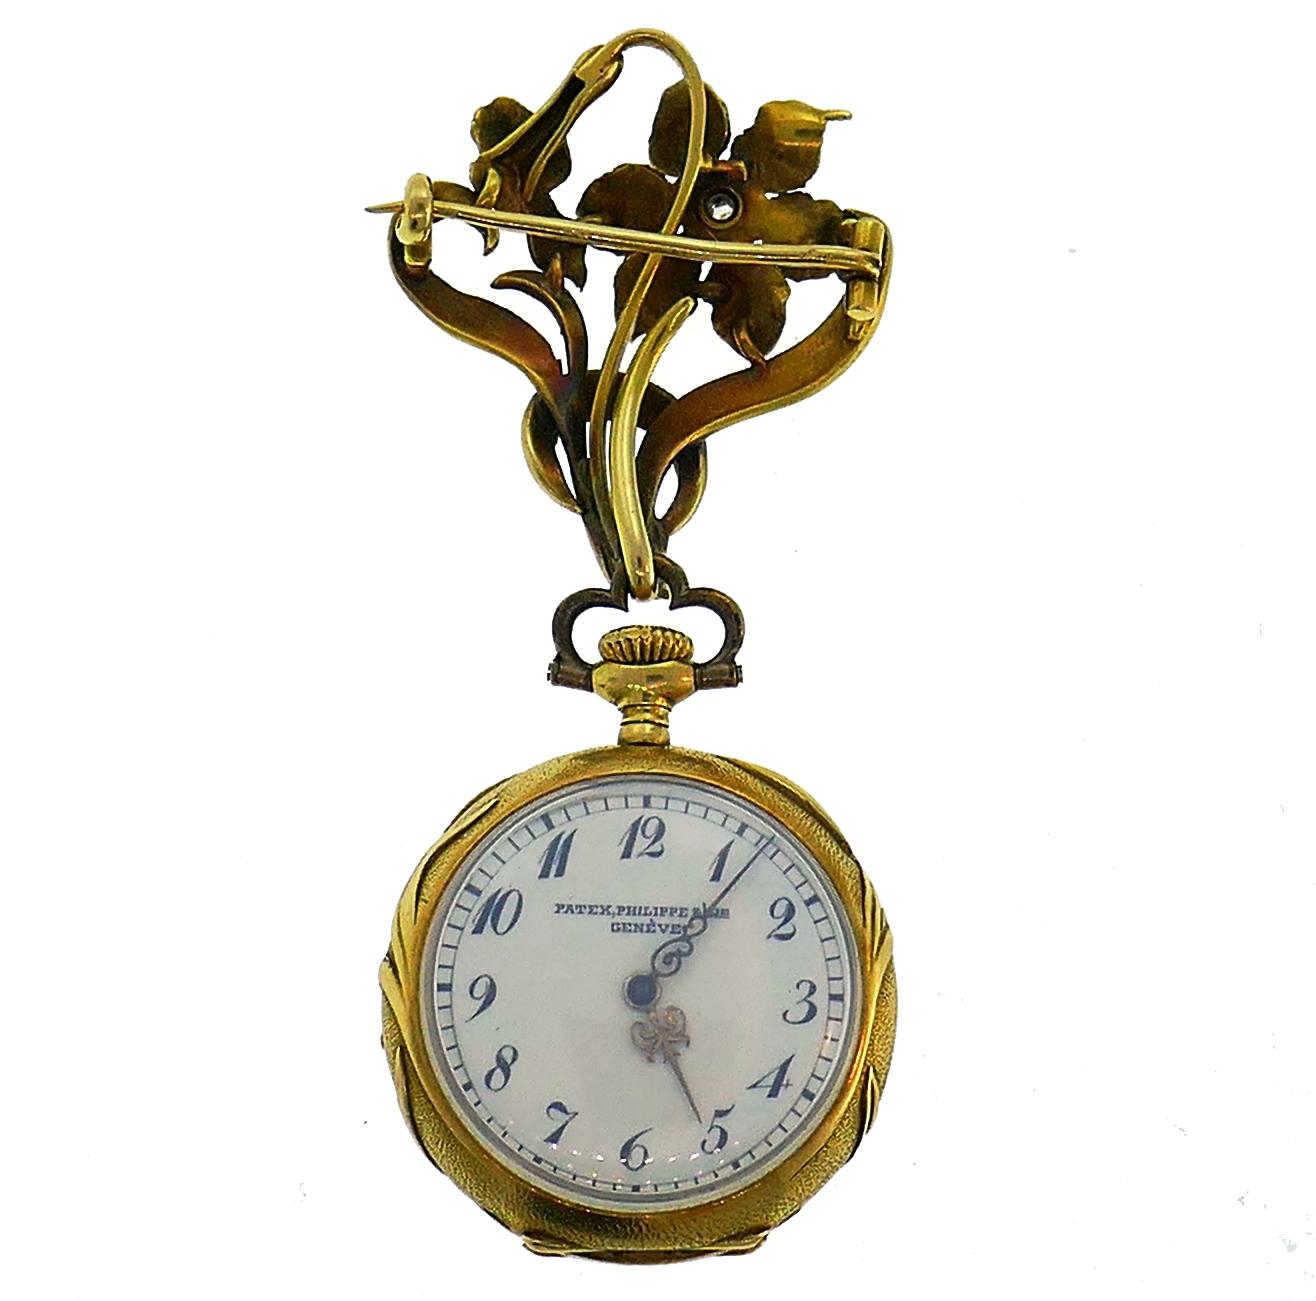 Seltene Patek Philippe Revers/Taschenuhr, die auf jeden Fall ein Gesprächsthema sein würde. Sie wurde um 1900 in der Schweiz entwickelt. Hergestellt aus 18 Karat (gestempelt) Gelbgold. Das Uhrwerk ist ein originales Patek Philippe Handaufzugswerk